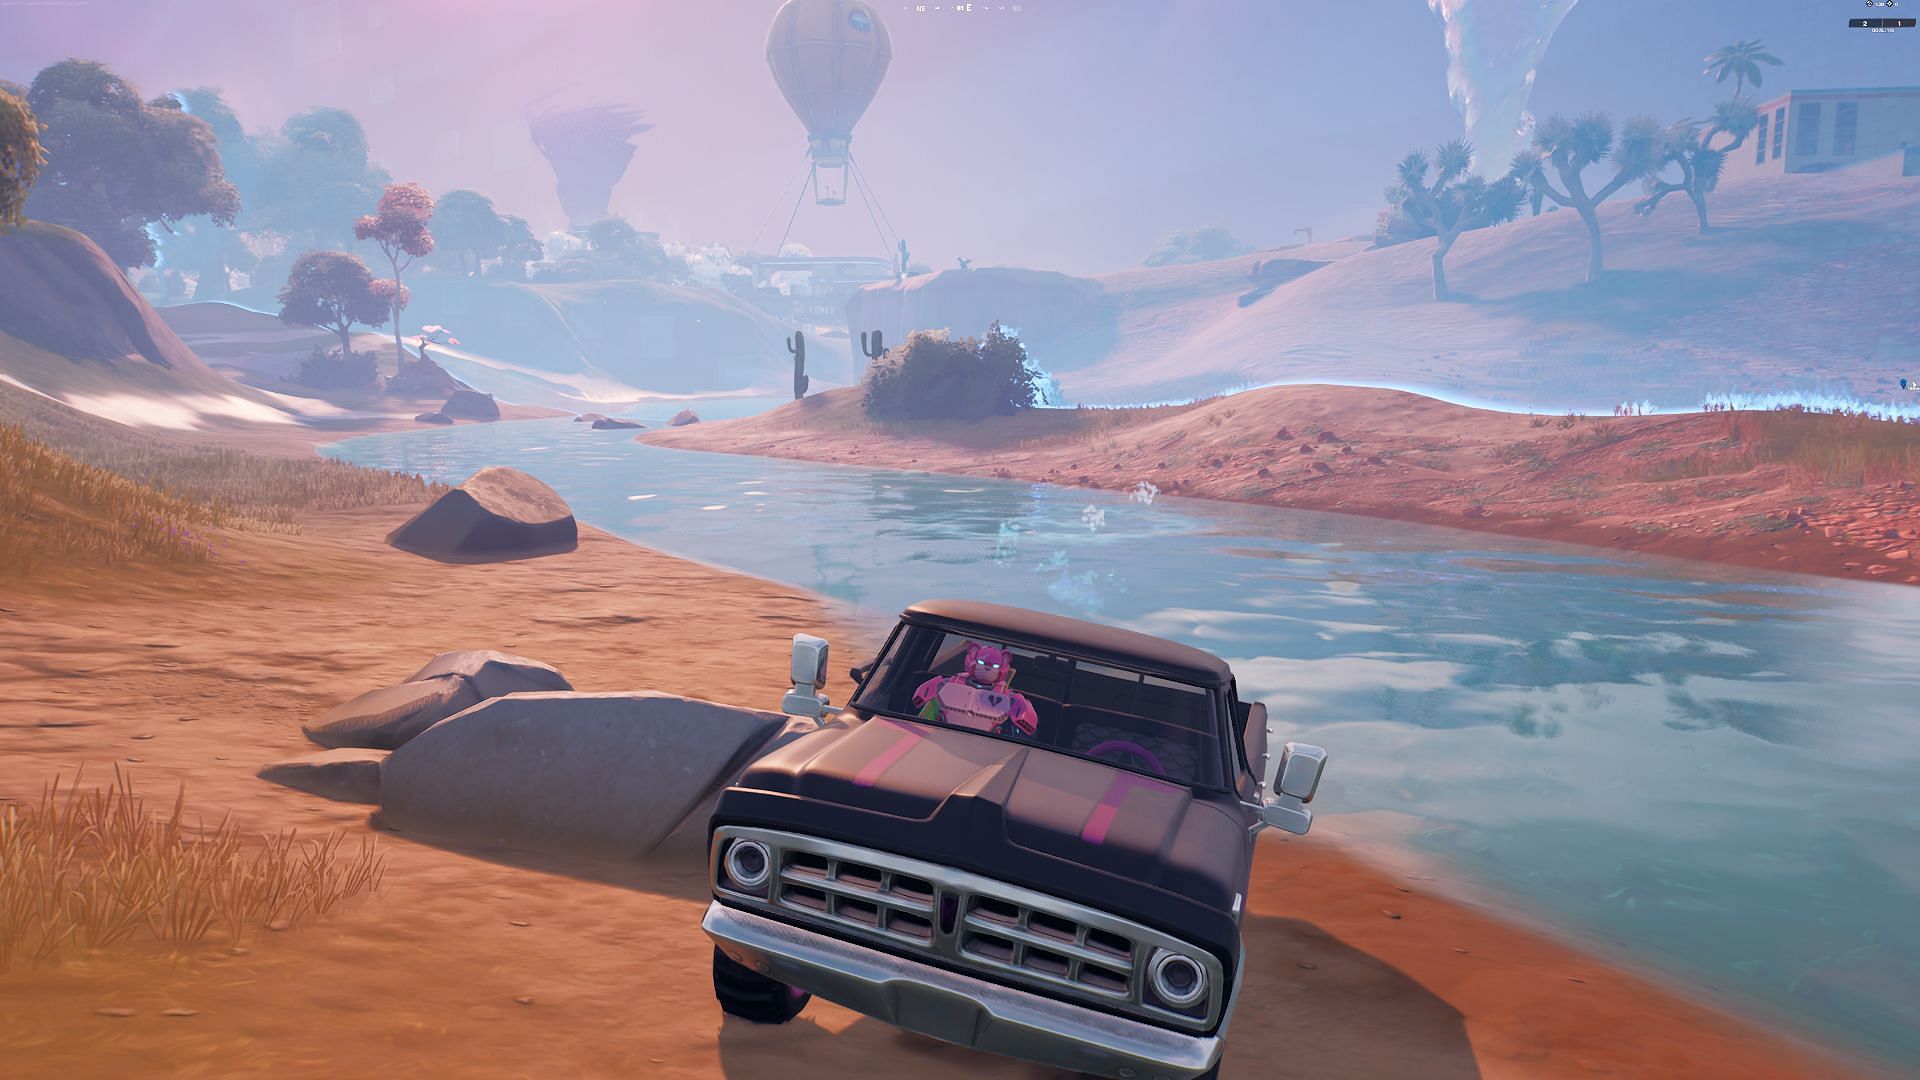 Warten Sie, Bis Das Fahrzeug Herunterfällt, Und Verwenden Sie Es, Um Sich In Die Nächste Sichere Zone Zu Drehen (Bild Von Epic Games/Fortnite)